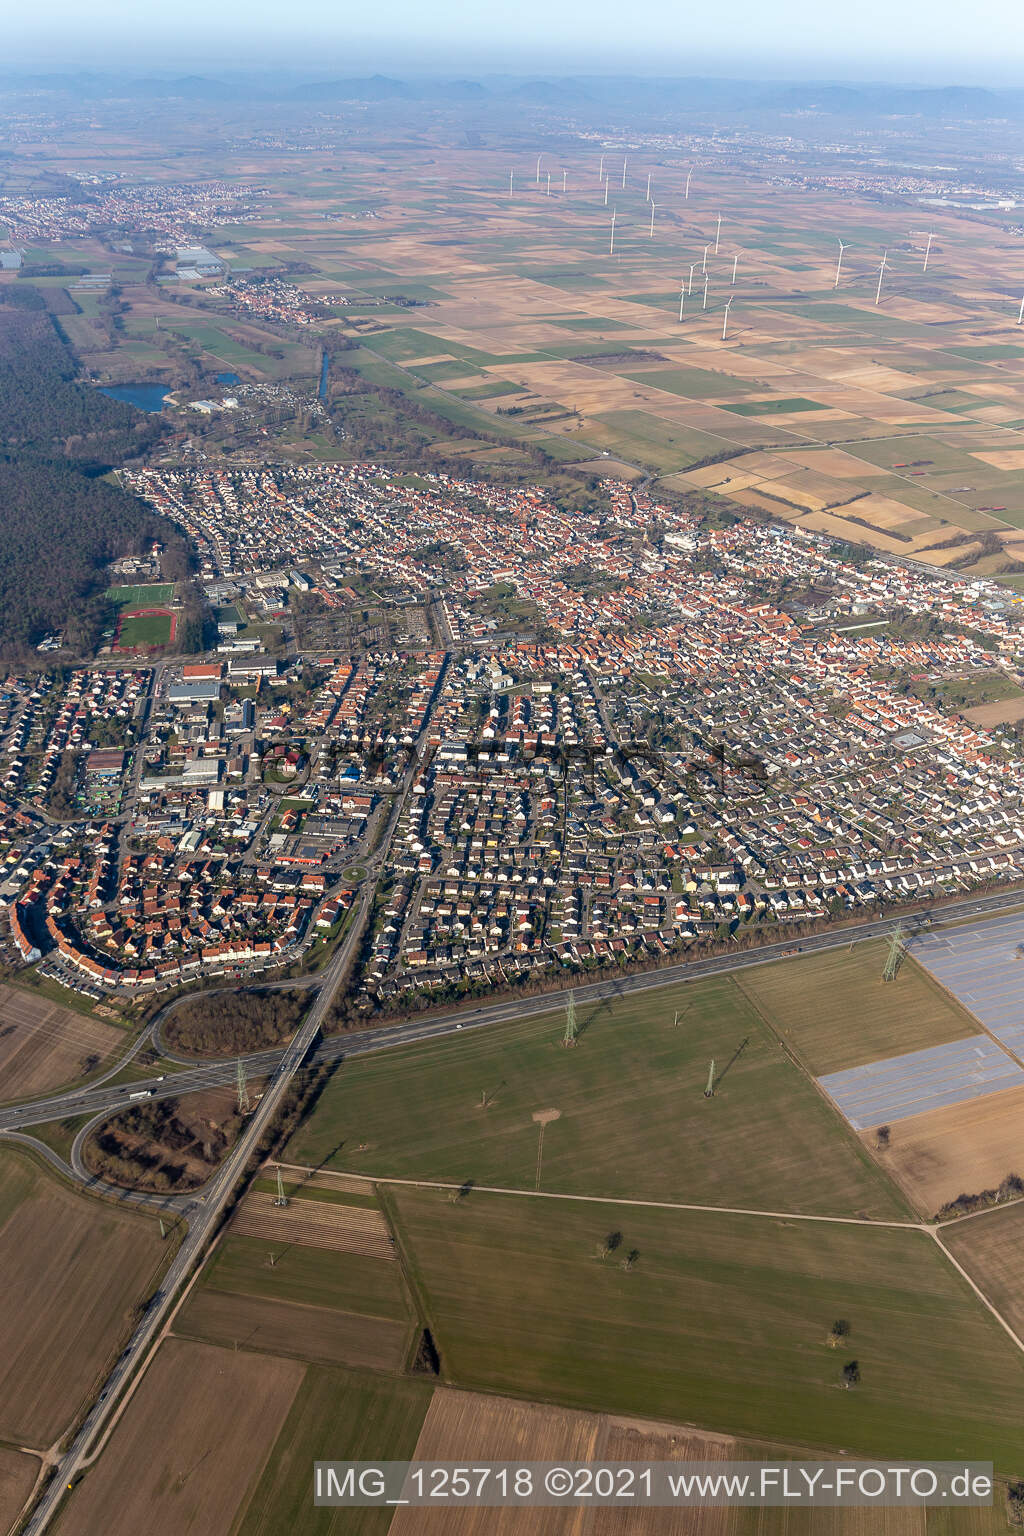 Rülzheim dans le département Rhénanie-Palatinat, Allemagne vue d'en haut